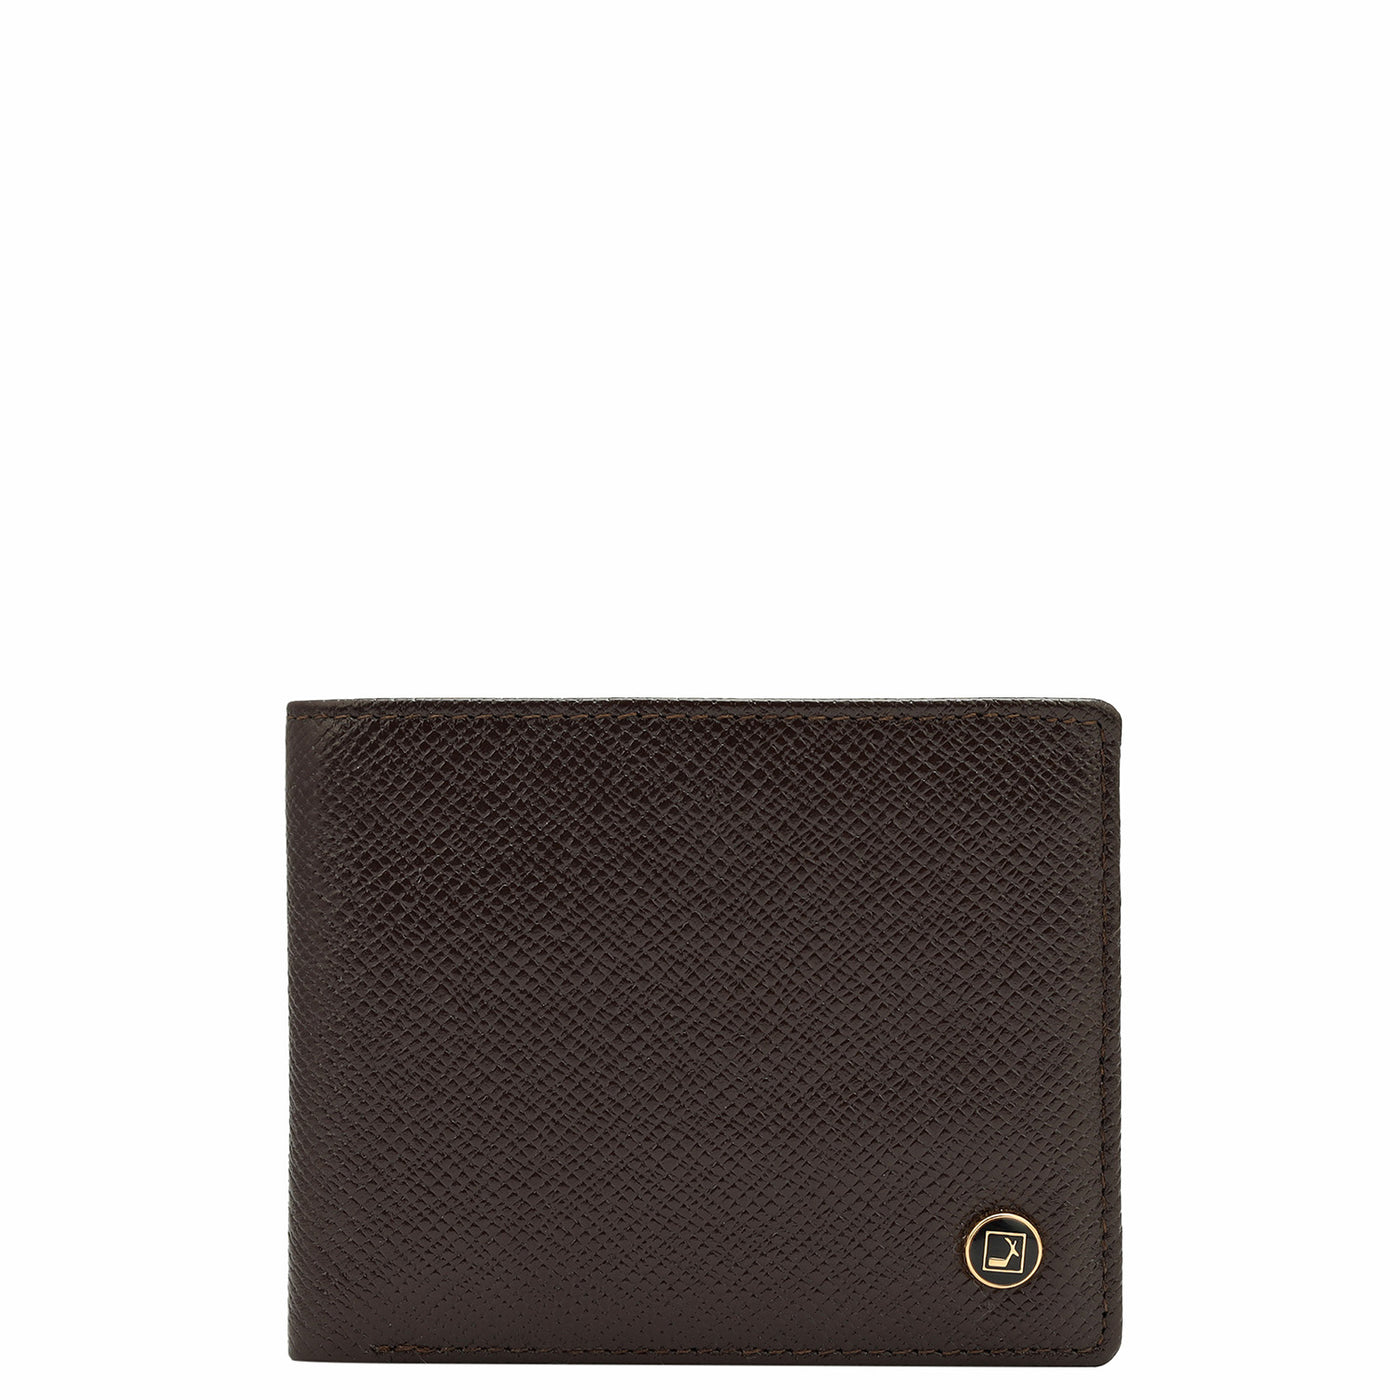 Brown & Black Franzy Leather Mens Wallet & Belt Gift Set